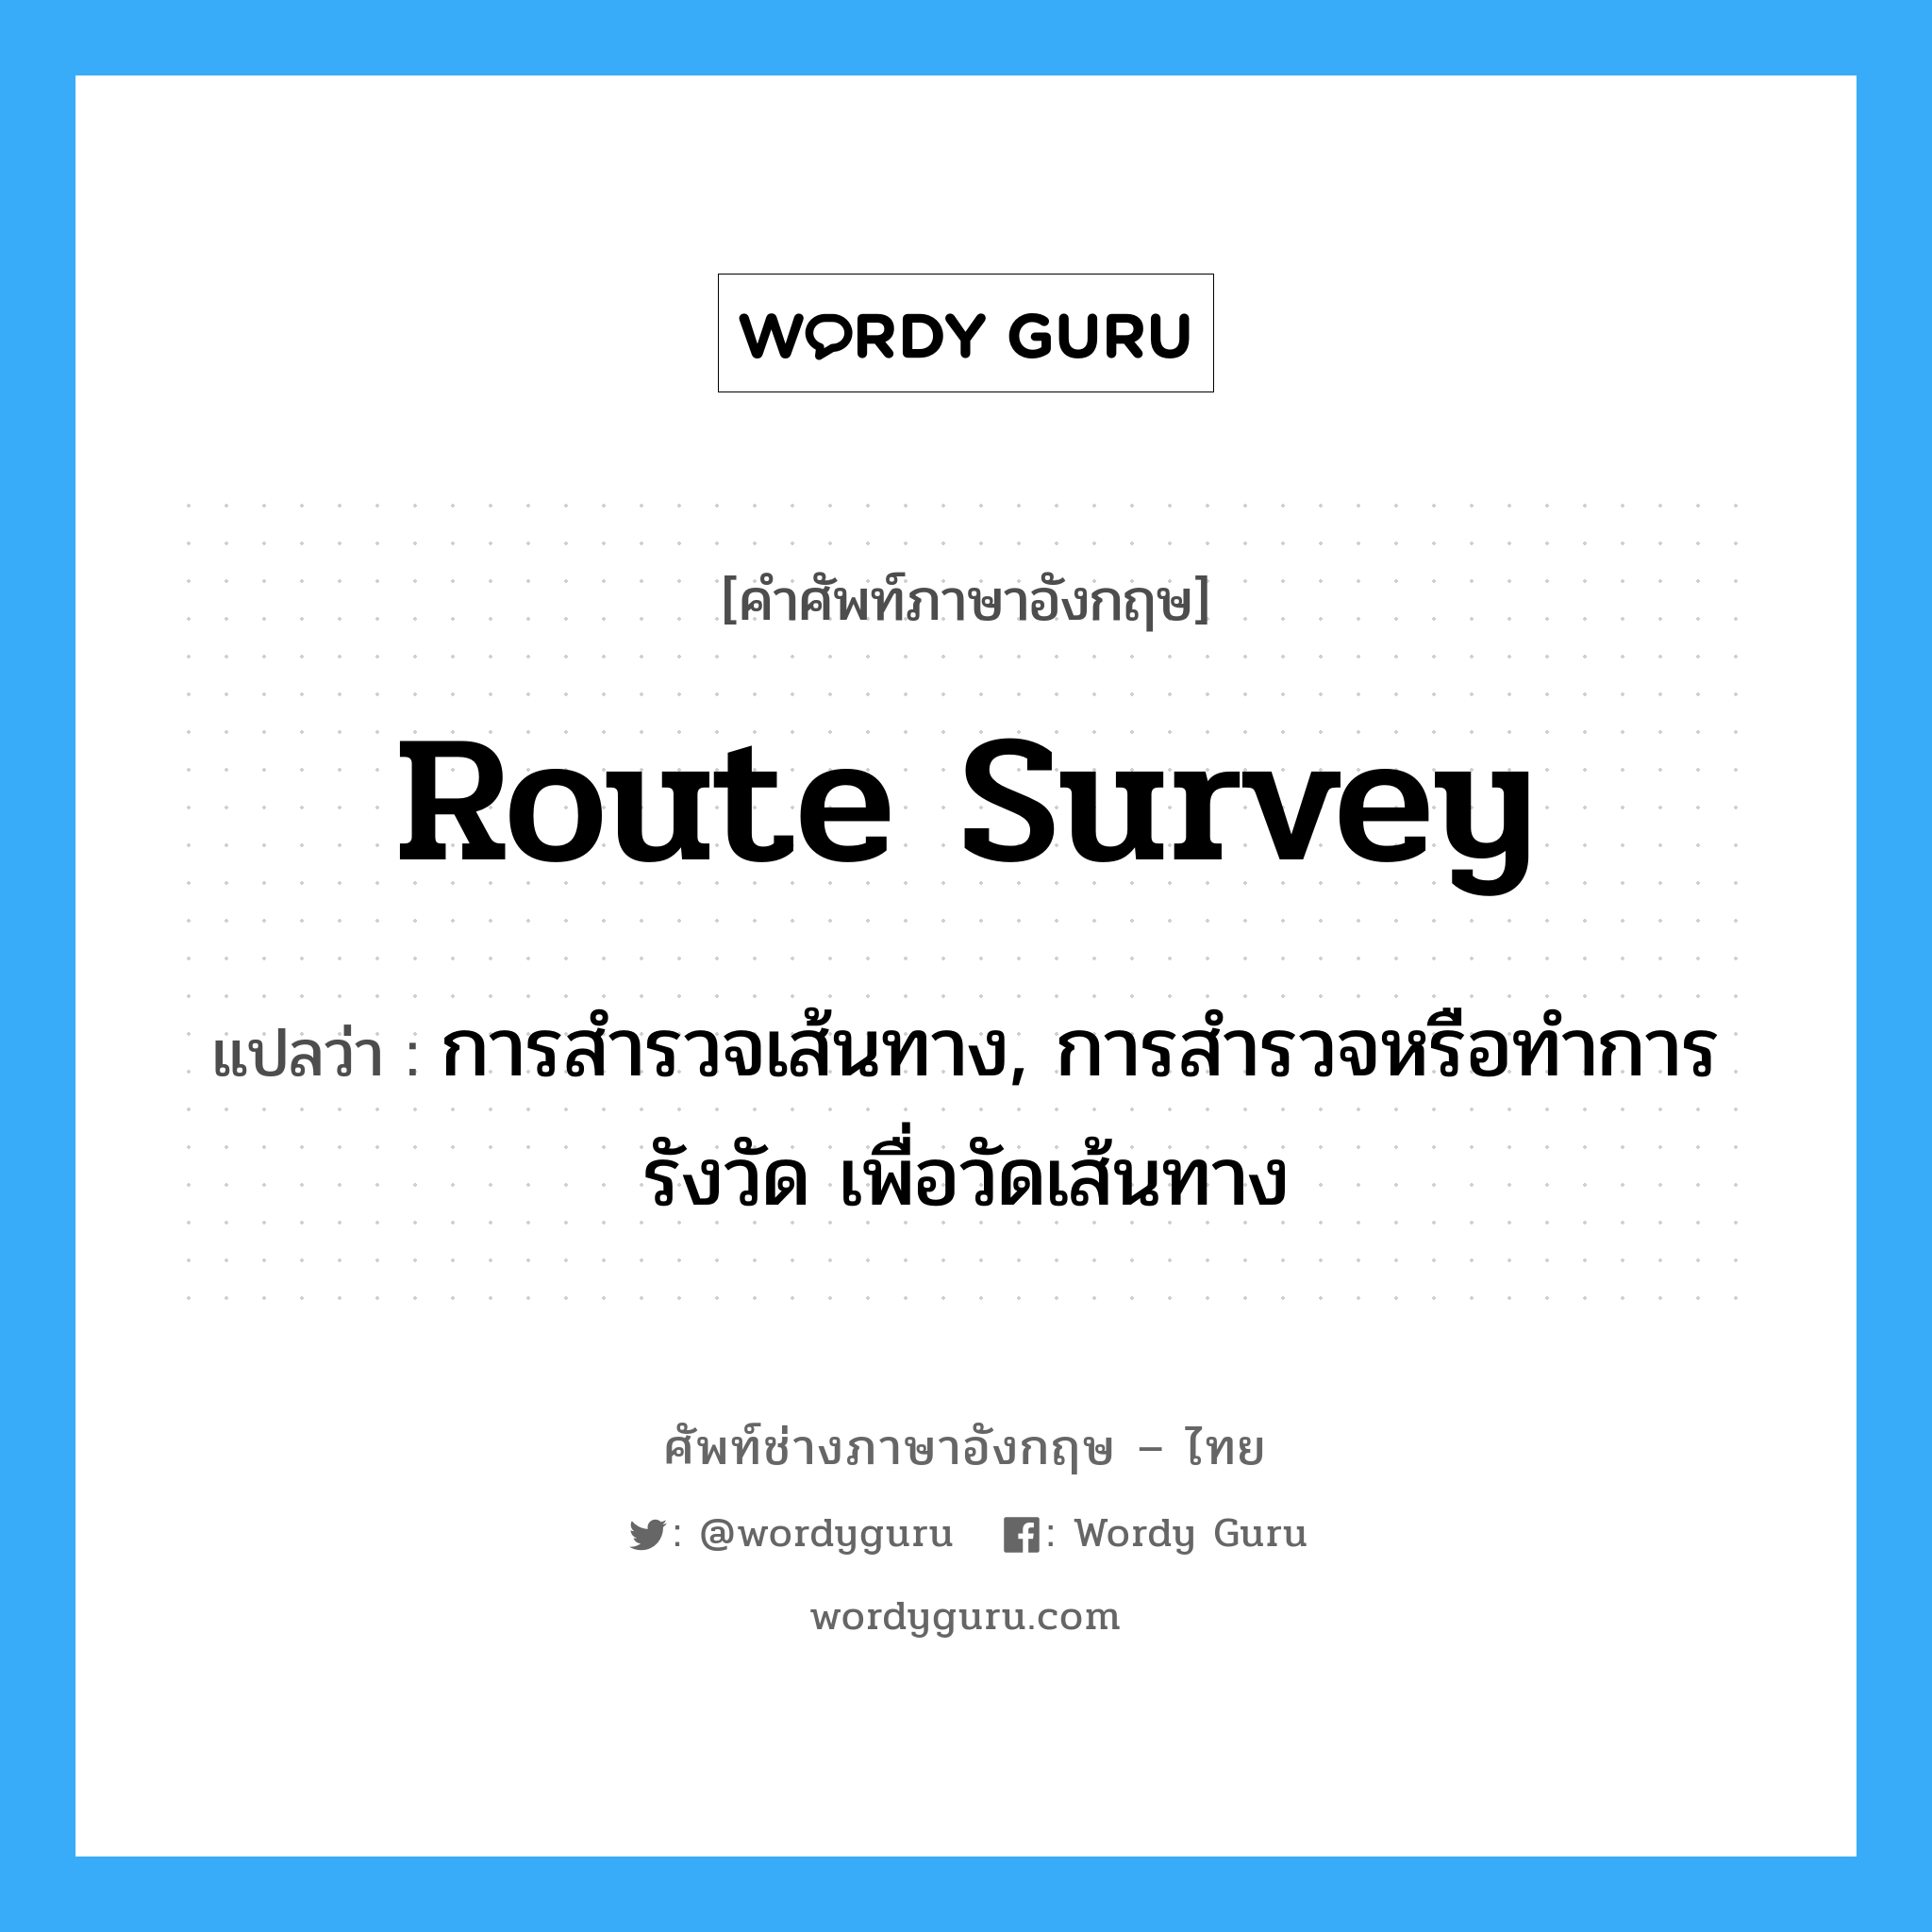 route survey แปลว่า?, คำศัพท์ช่างภาษาอังกฤษ - ไทย route survey คำศัพท์ภาษาอังกฤษ route survey แปลว่า การสำรวจเส้นทาง, การสำรวจหรือทำการรังวัด เพื่อวัดเส้นทาง